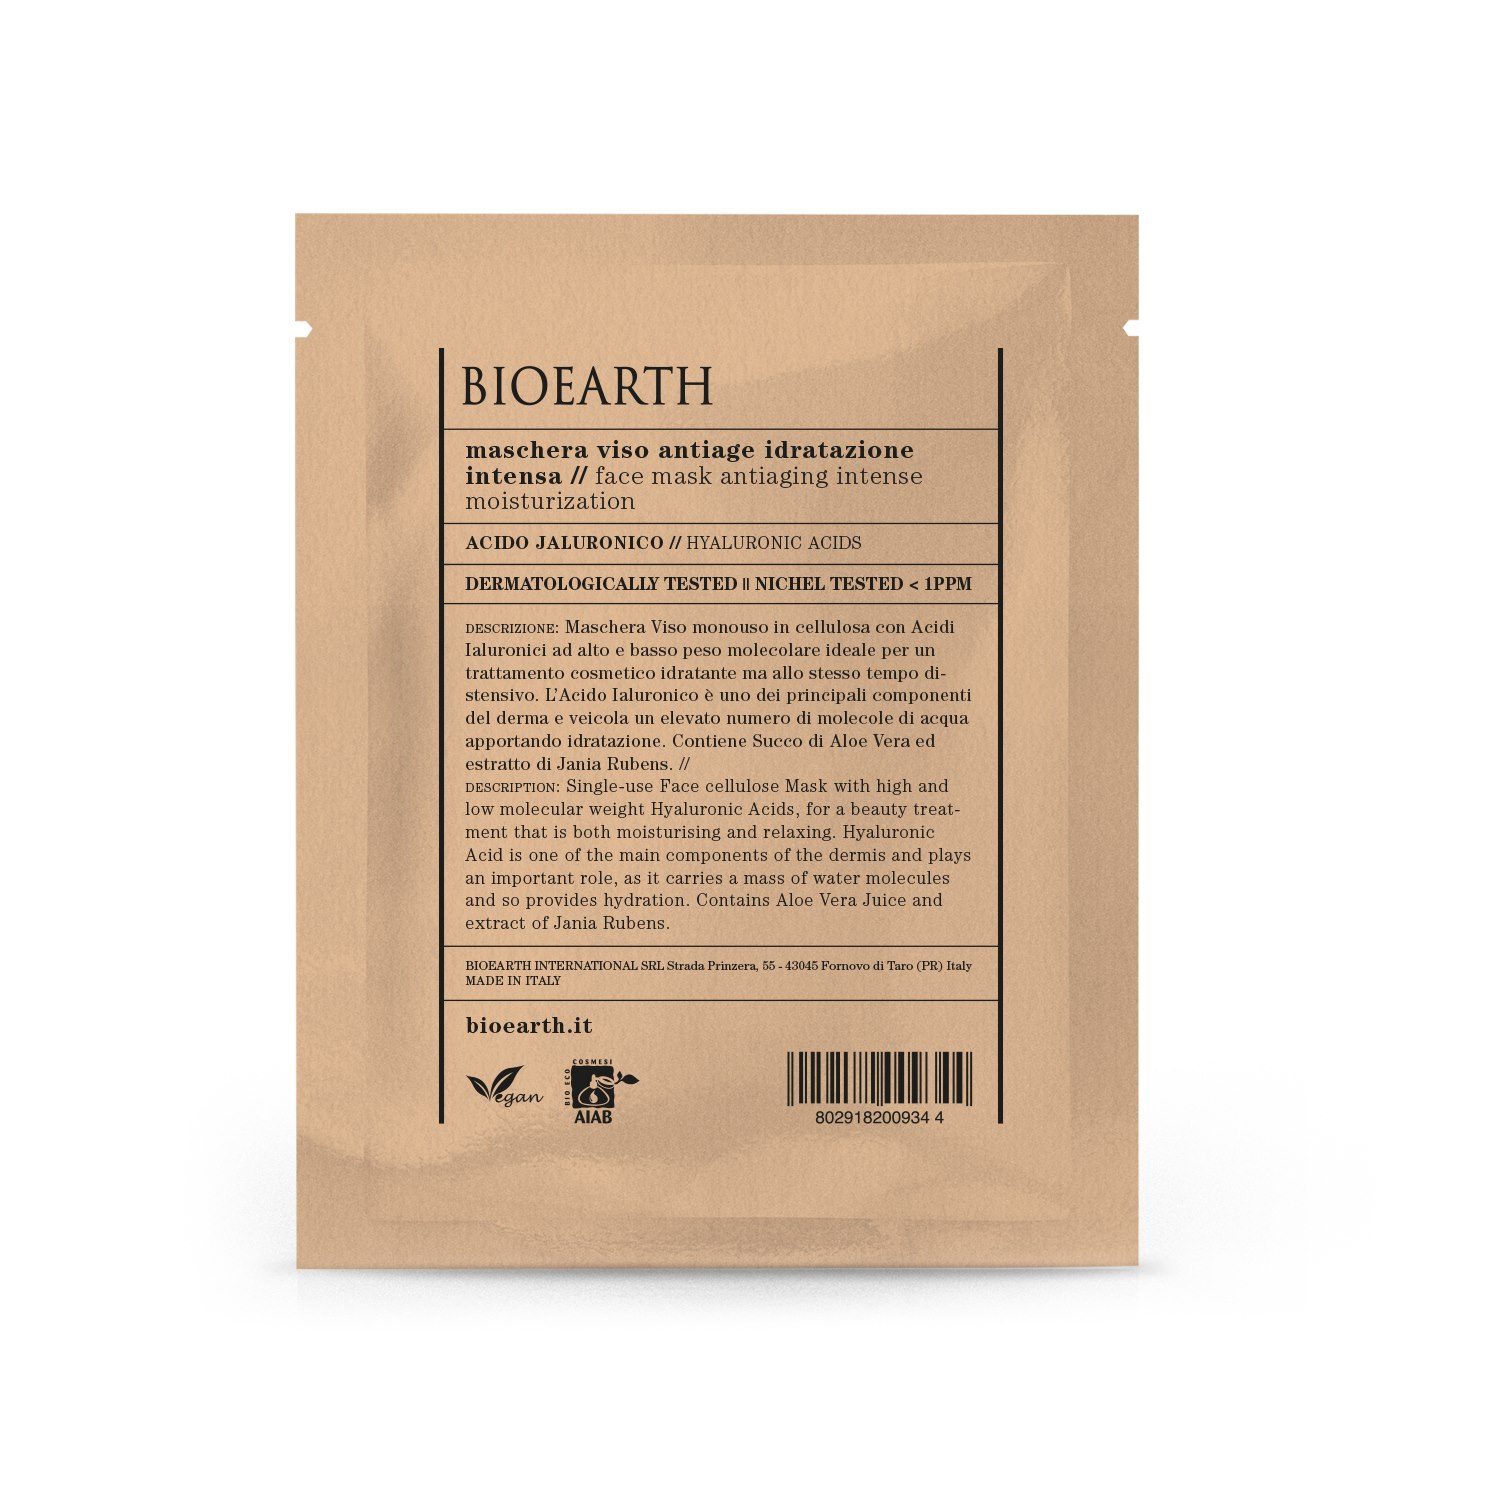 Bioearth Anti-Ageing Intense Moisturization Sheet Mask, 15 ml